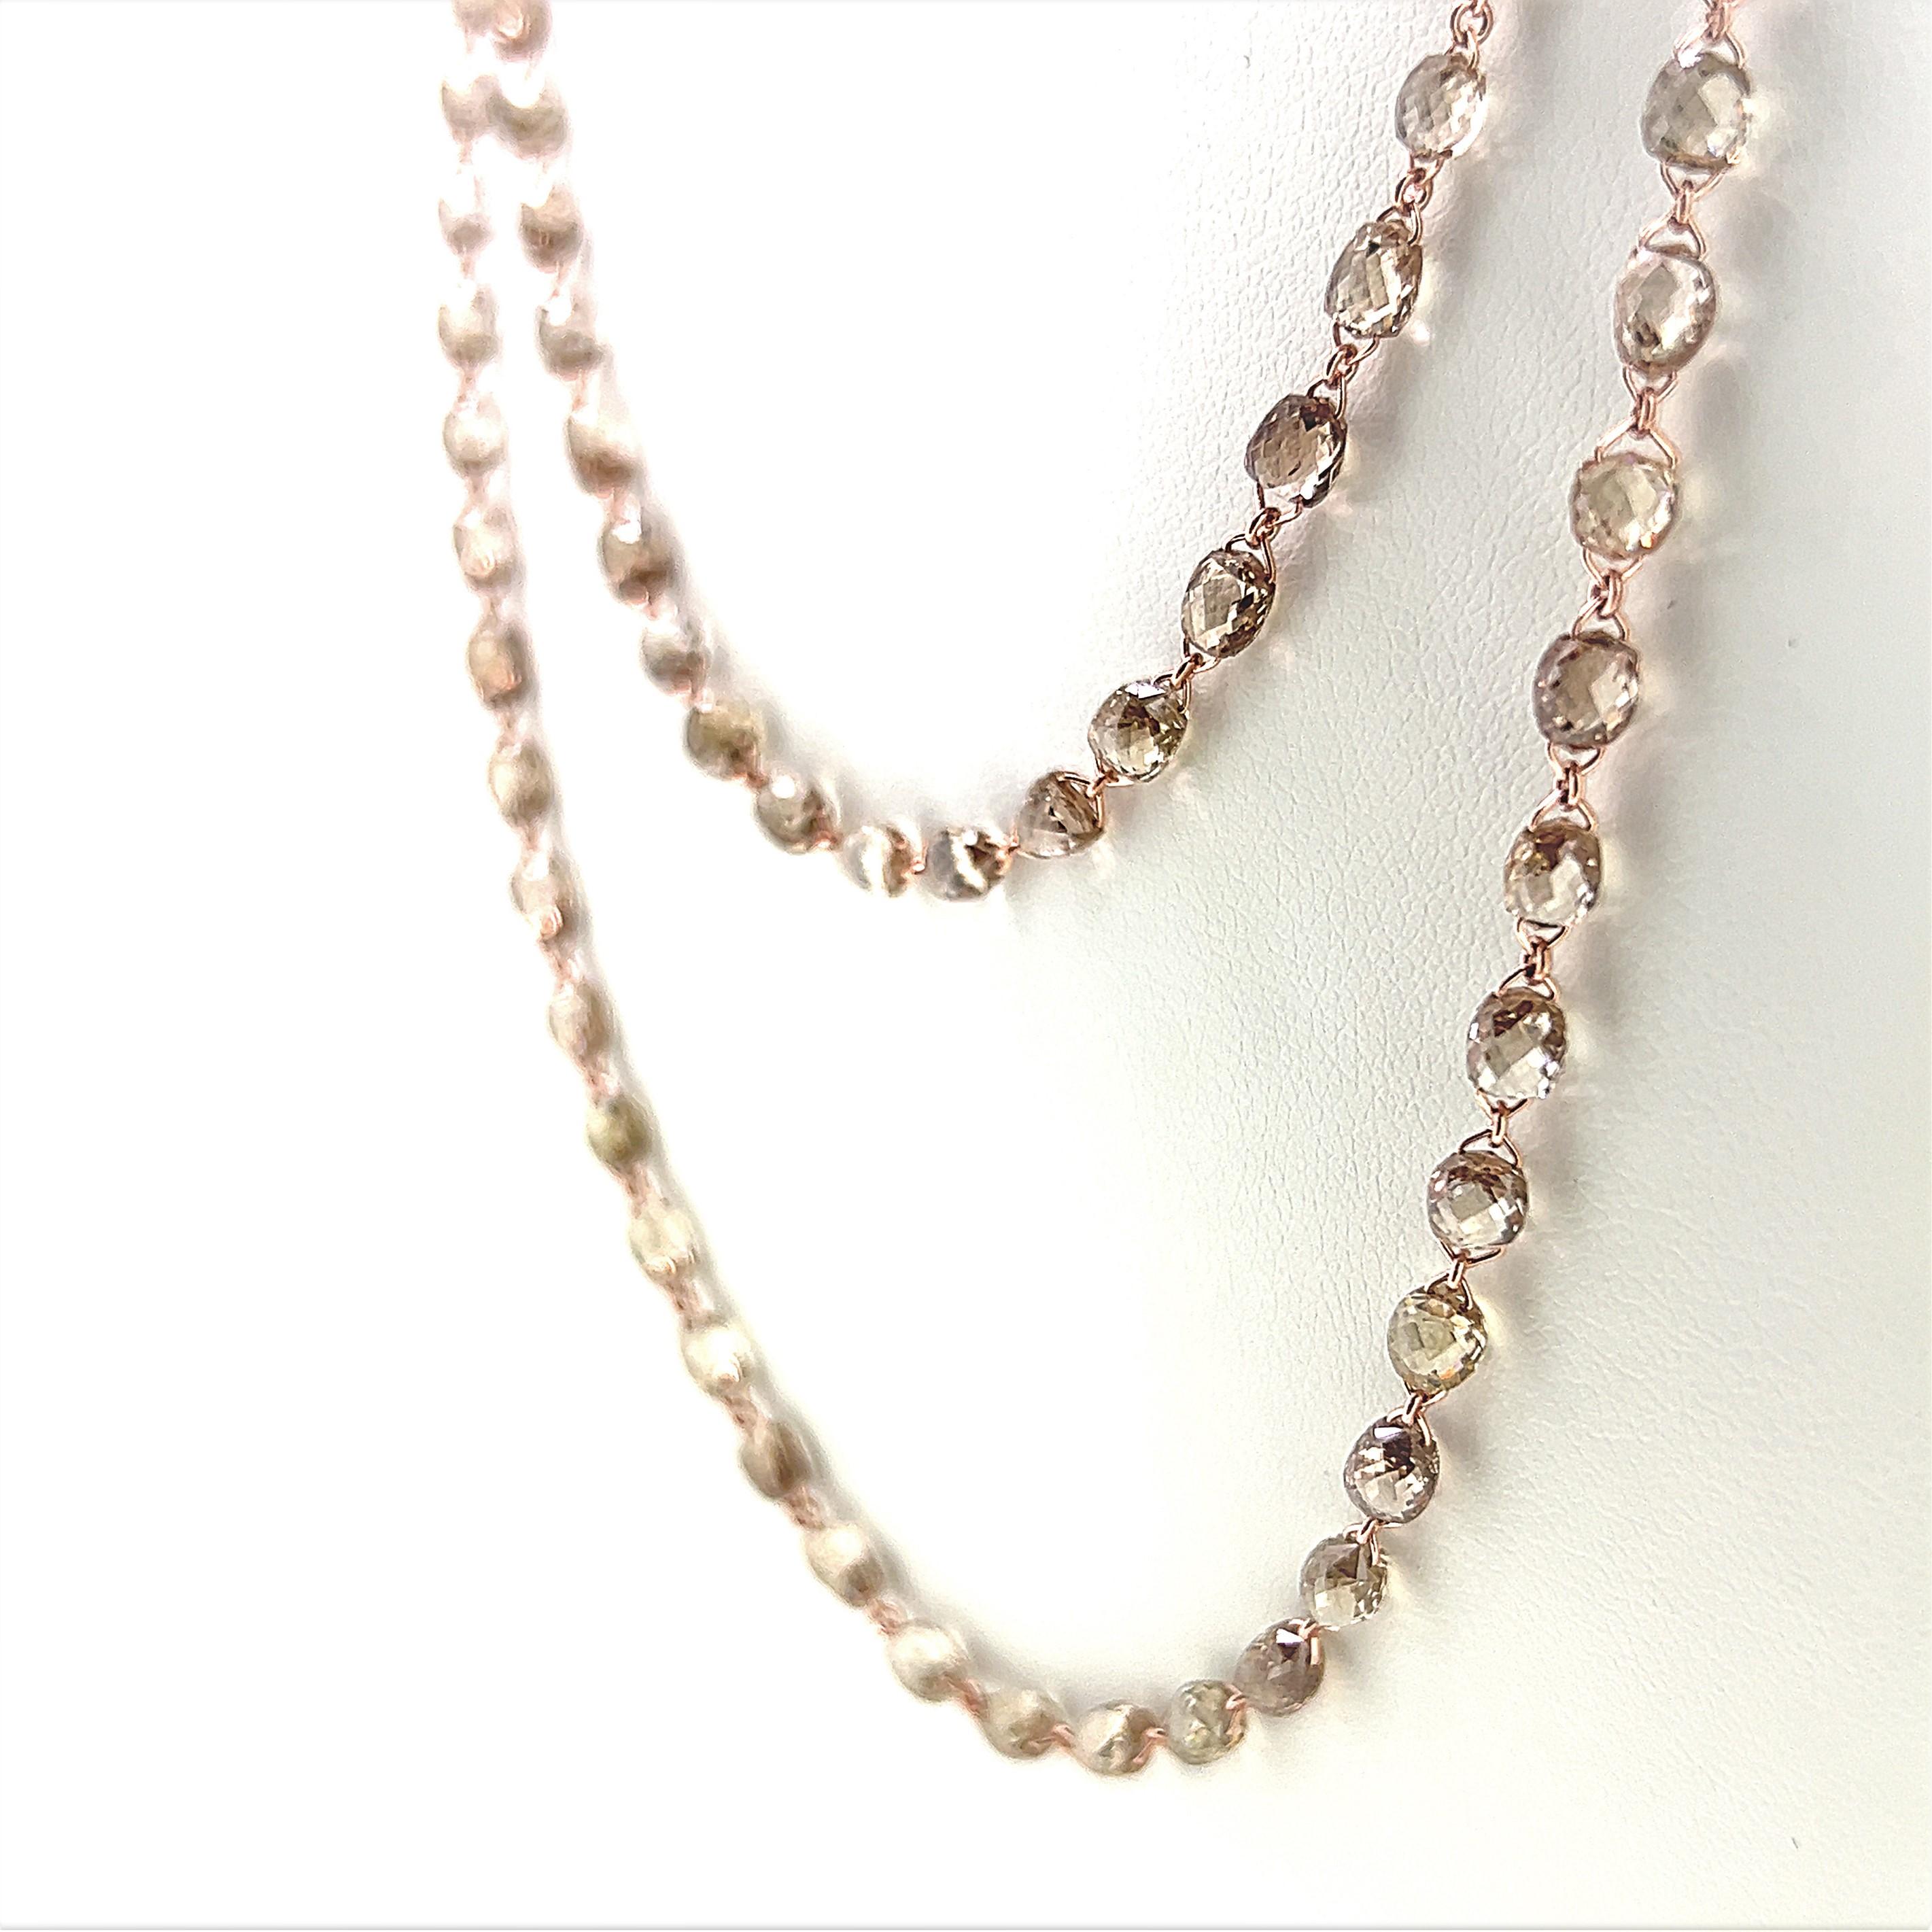 Briolette Cut 67.74 Carat Briolette Brown Diamond Necklace Set on 18 Karat Rose Gold For Sale